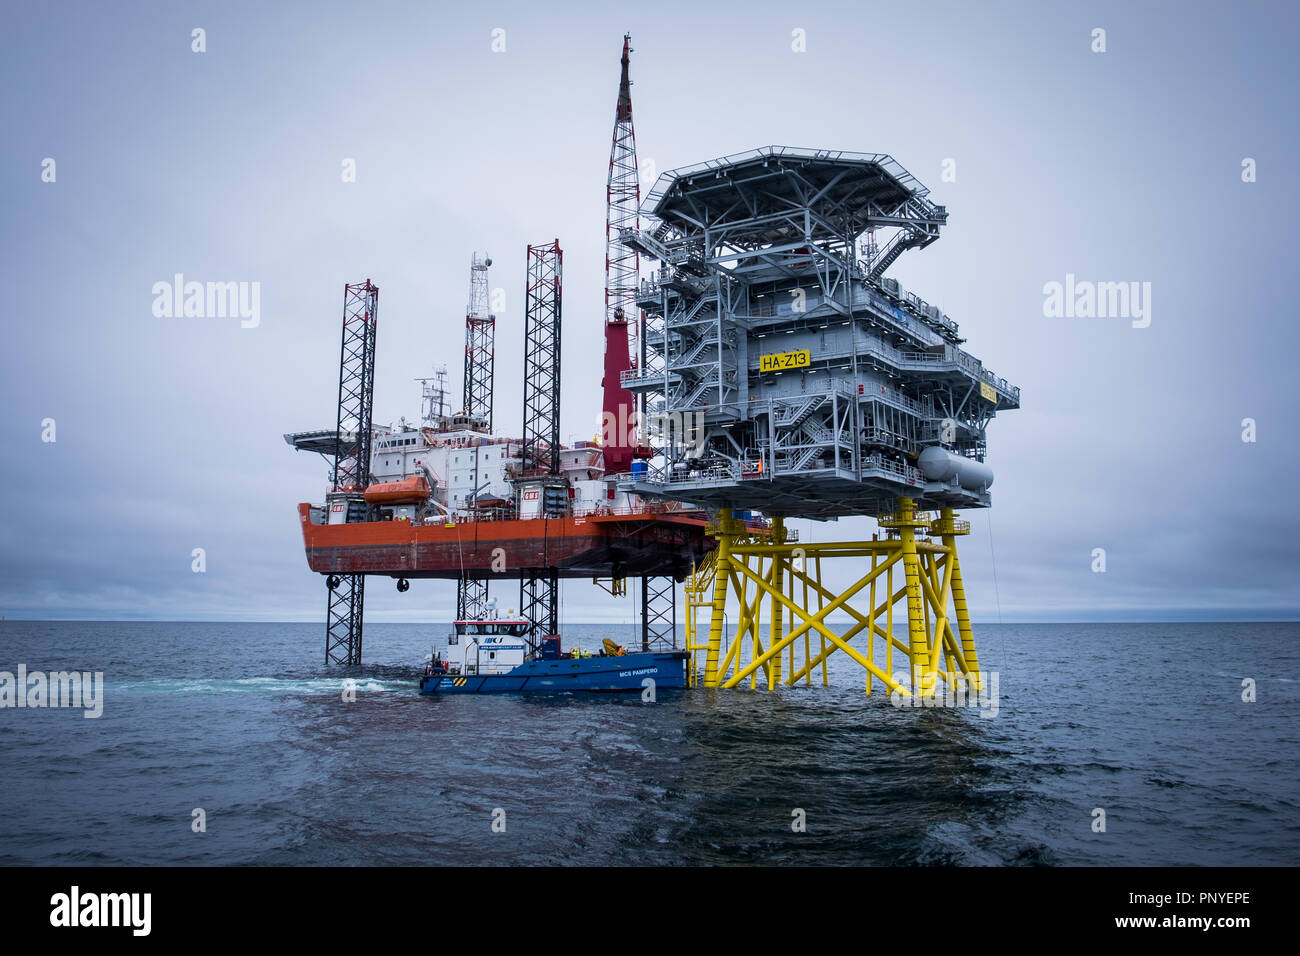 Eleve la plataforma de alojamiento, GMS empeño, y una de las tres subestaciones offshore durante la fase de construcción del proyecto Hornsea en un parque eólico offshore. Foto de stock